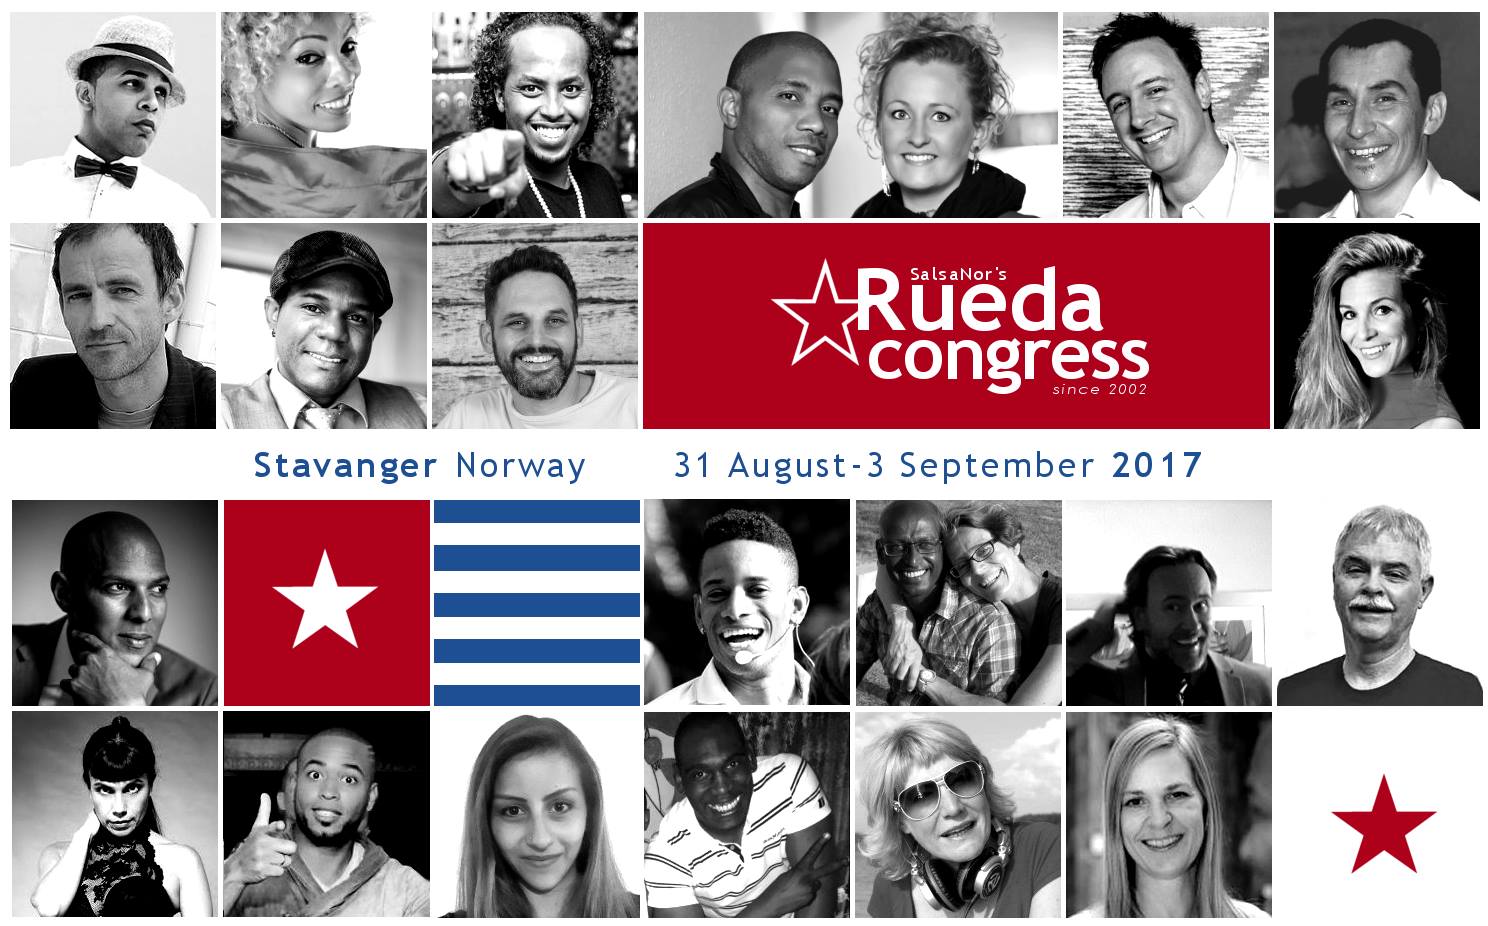 SalsaNors Ruedakongress 2017 – i Stavanger